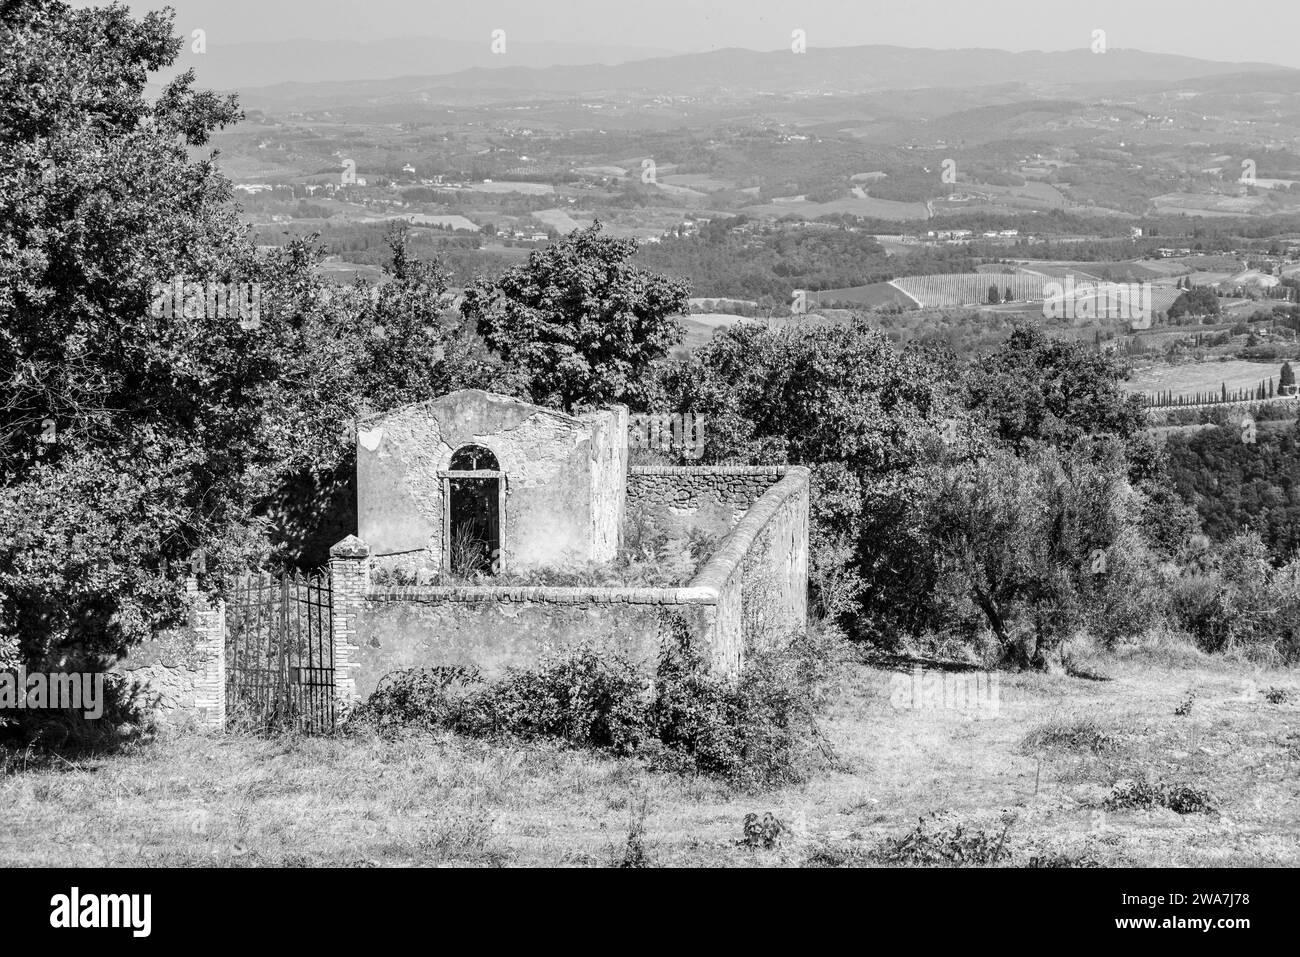 Un petit cimetière abandonné près du monastère Cellole dans le magnifique paysage de la Toscane, Italie Banque D'Images